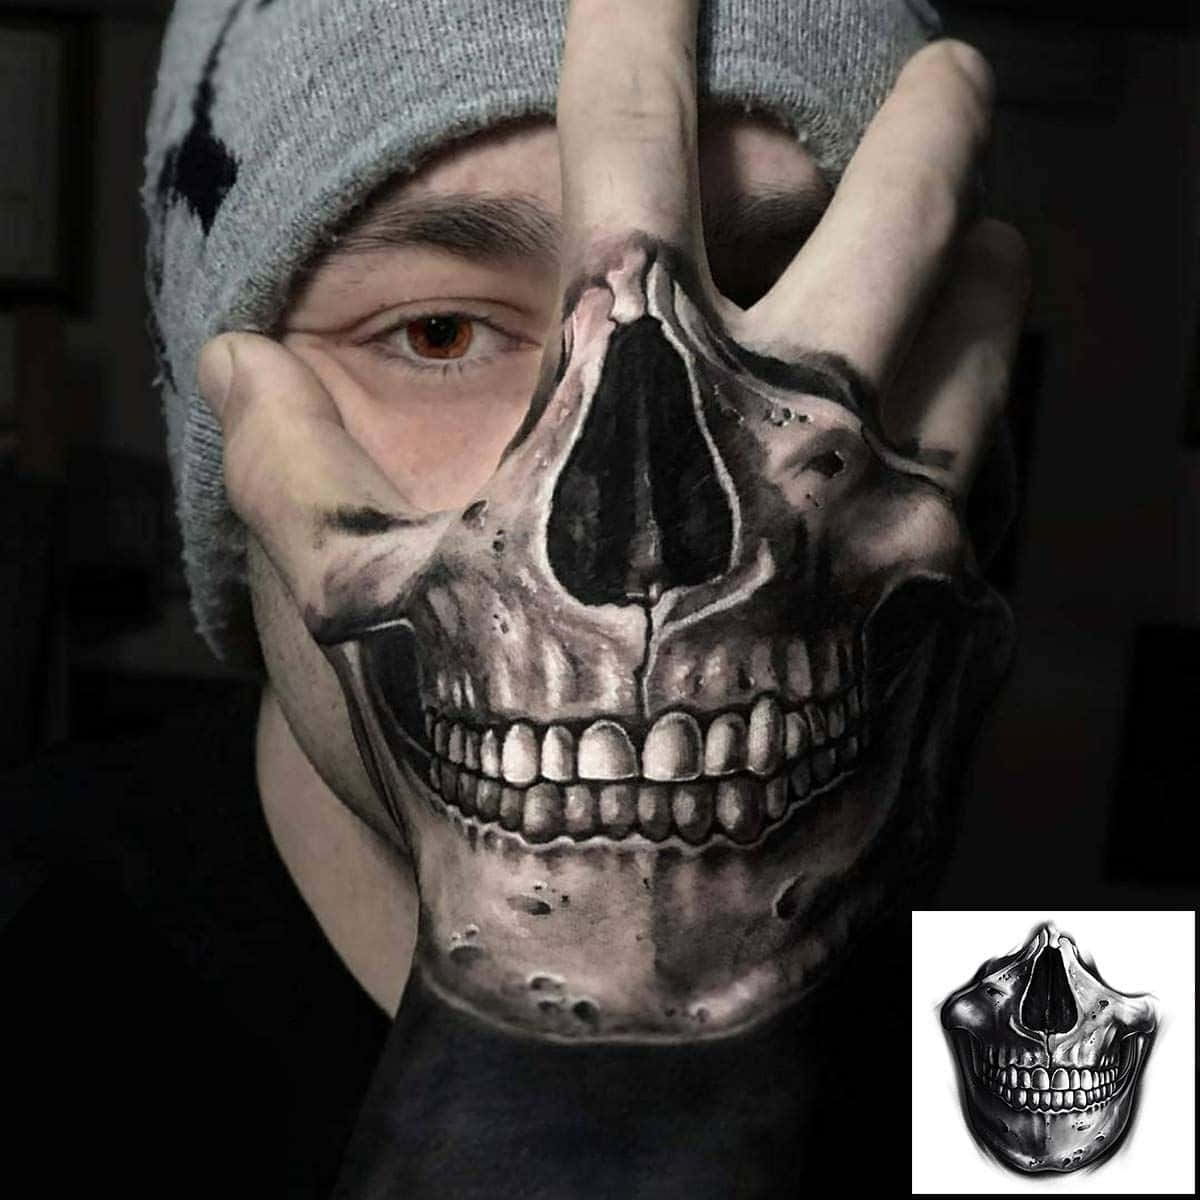 Bad ass skull man. @elmstreettattoo . . . . #tattoos #dallas #dallastexas  #elmstreettattoo #tattooflash #dfw #americanatattoos #tattoo #u... |  Instagram